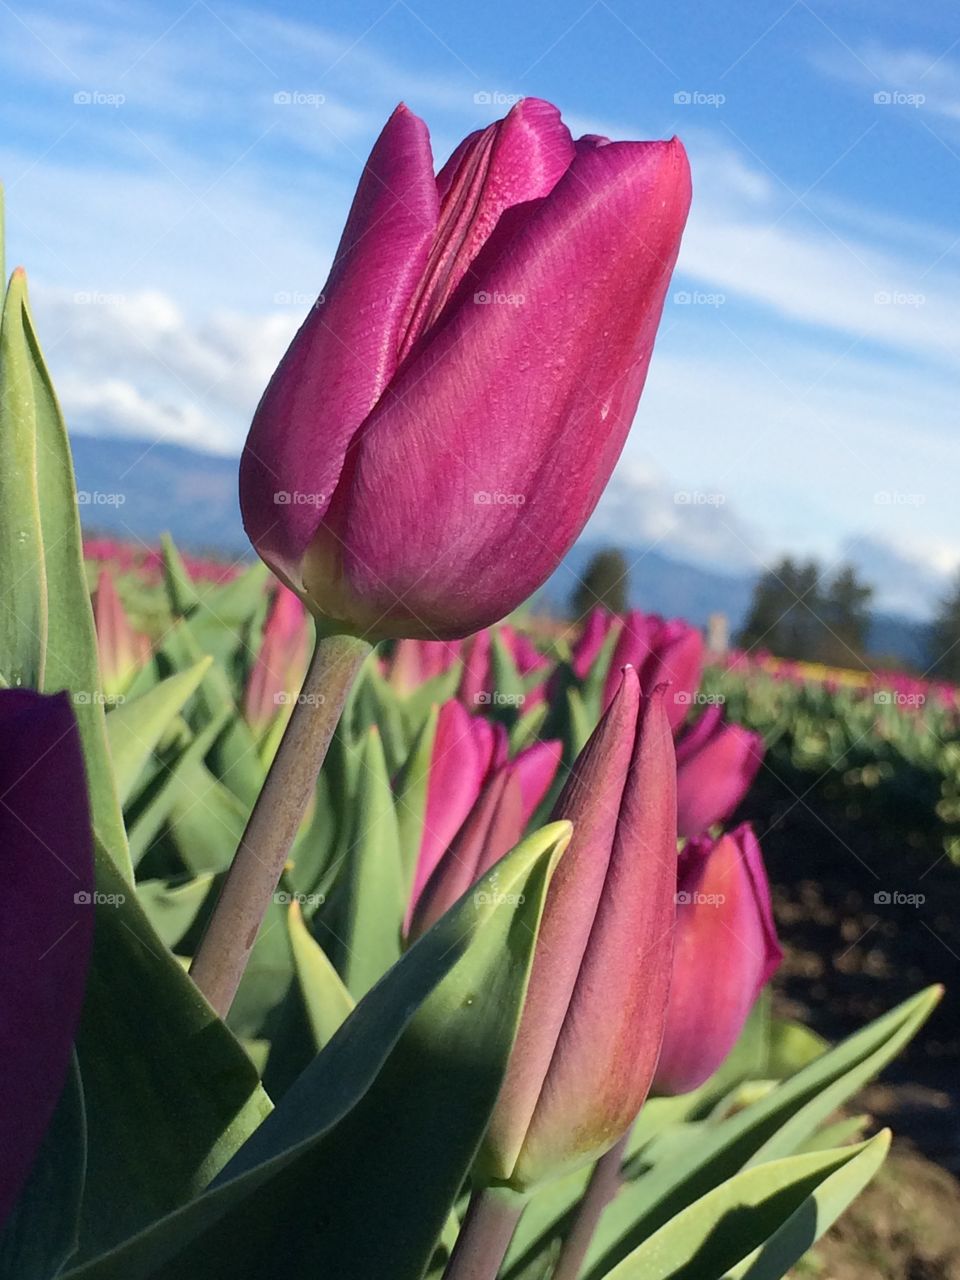 Tulip. Tulip field in Mt. Vernon, WA